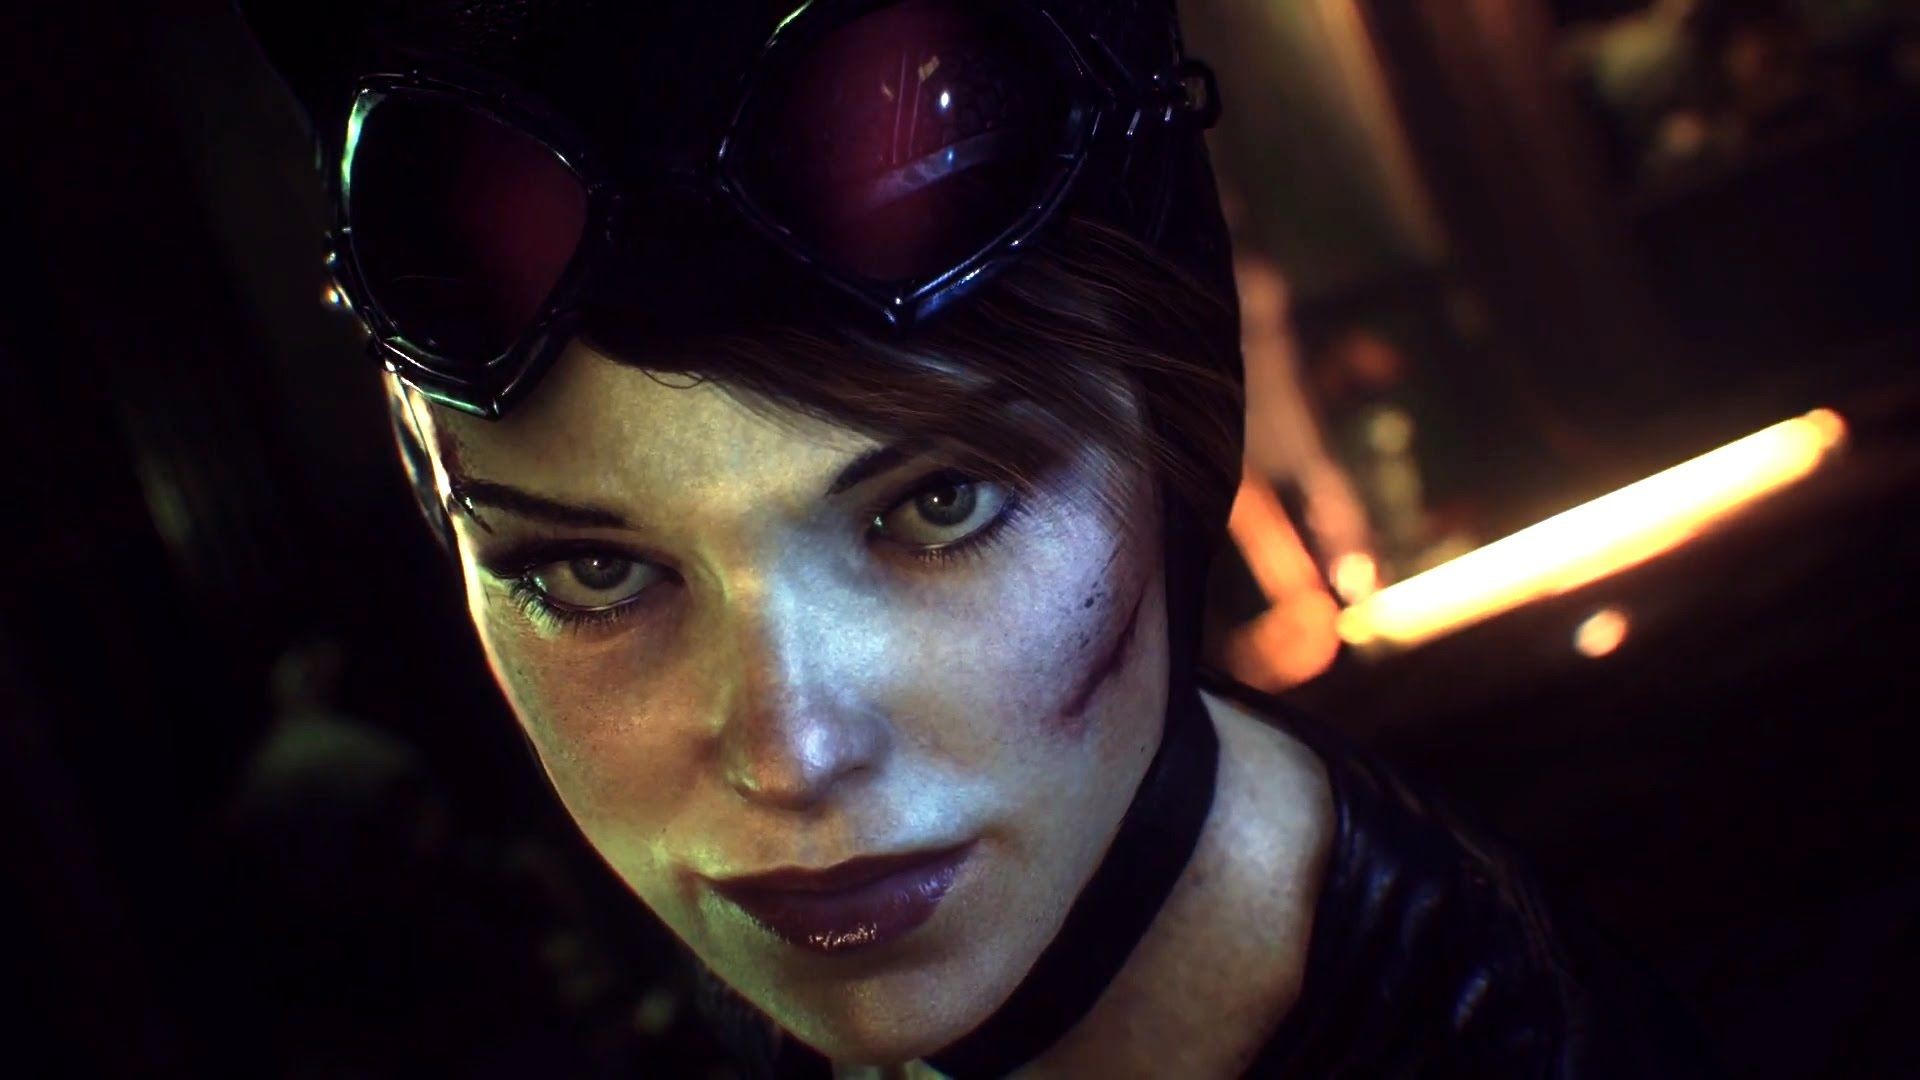 Catwoman “phục hận” trong DLC mới của "Batman: Arkham Knight"